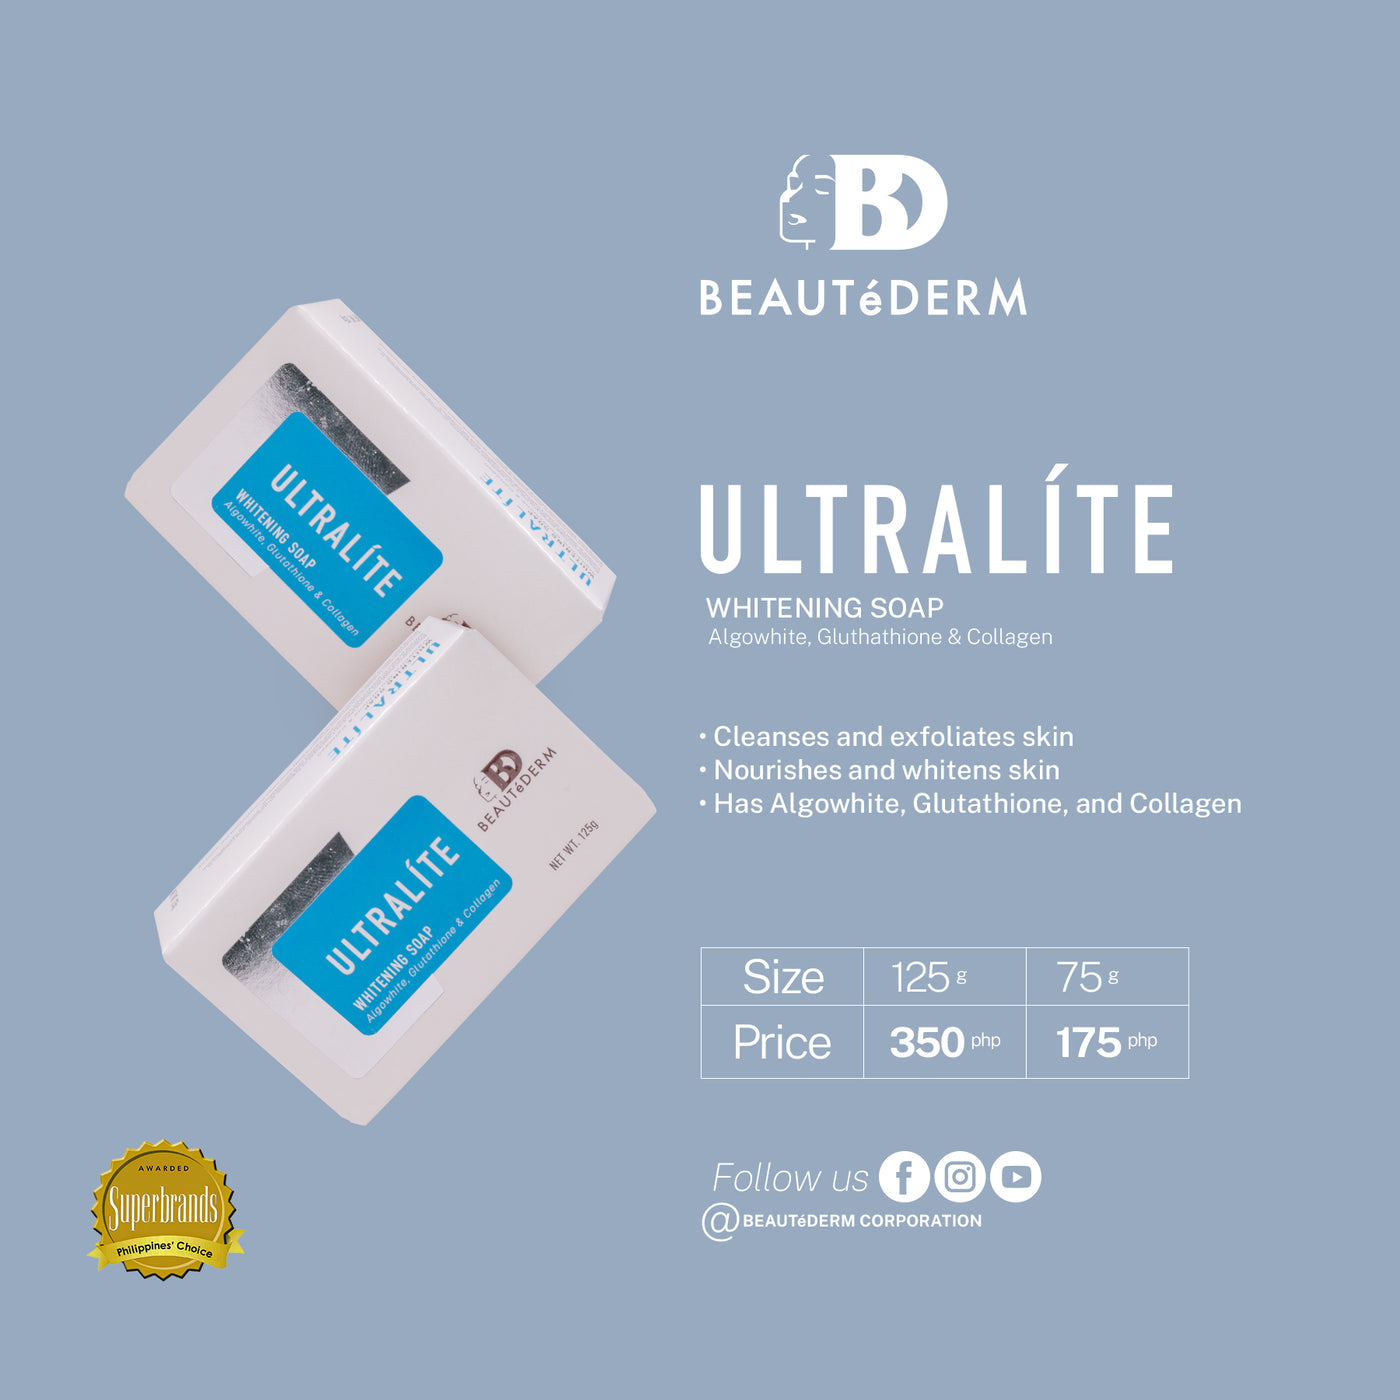 Ultralite Soap